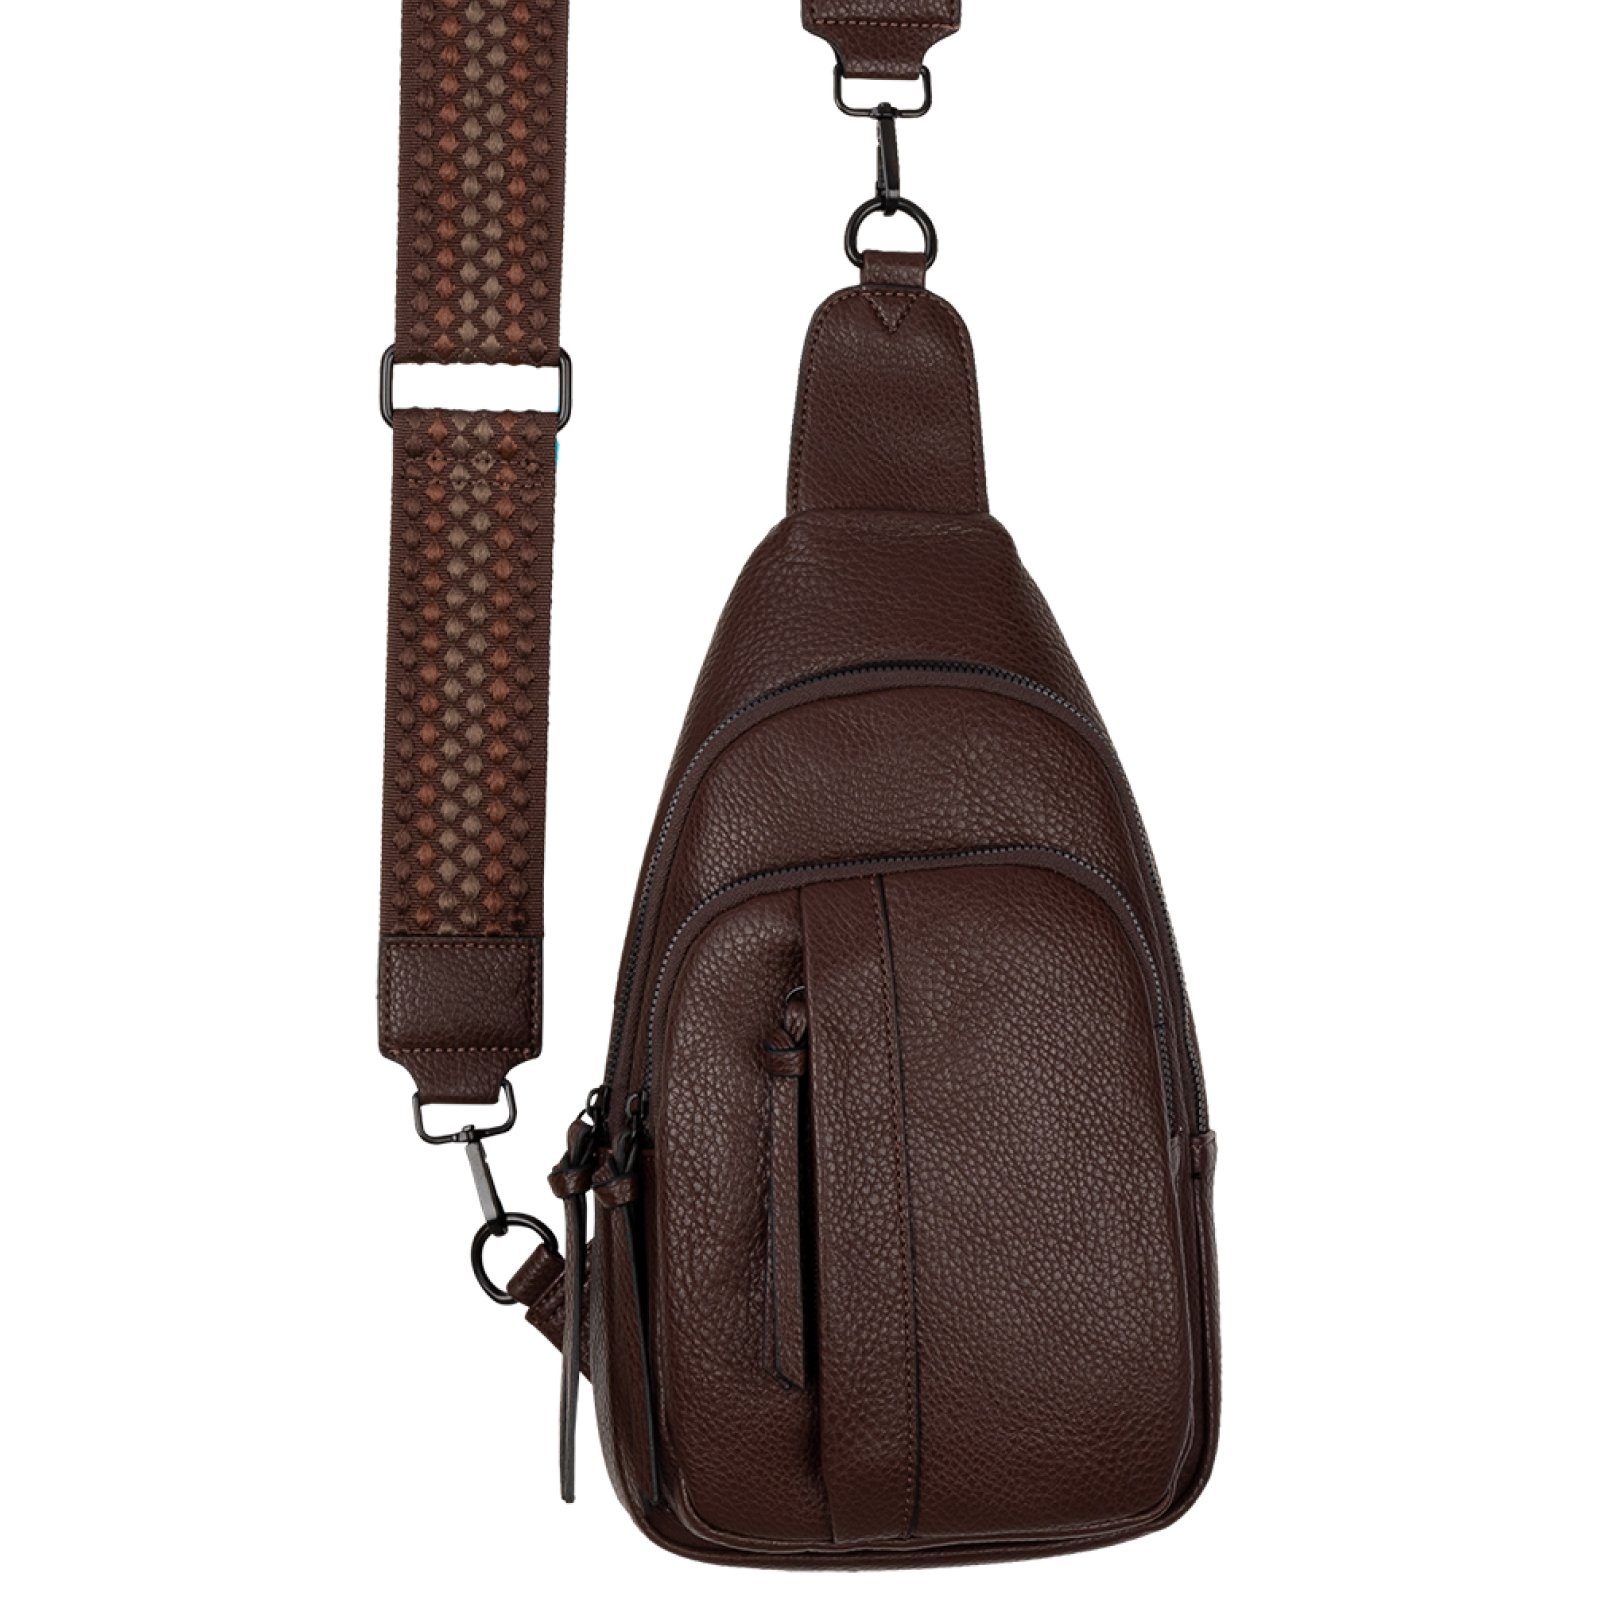 Body Cross EAAKIE Bag tragbar Brusttasche Umhängetasche CHOCOLATE Schultertasche, als Umhängetasche Schultertasche Umhängetasche Kunstleder, CrossOver,